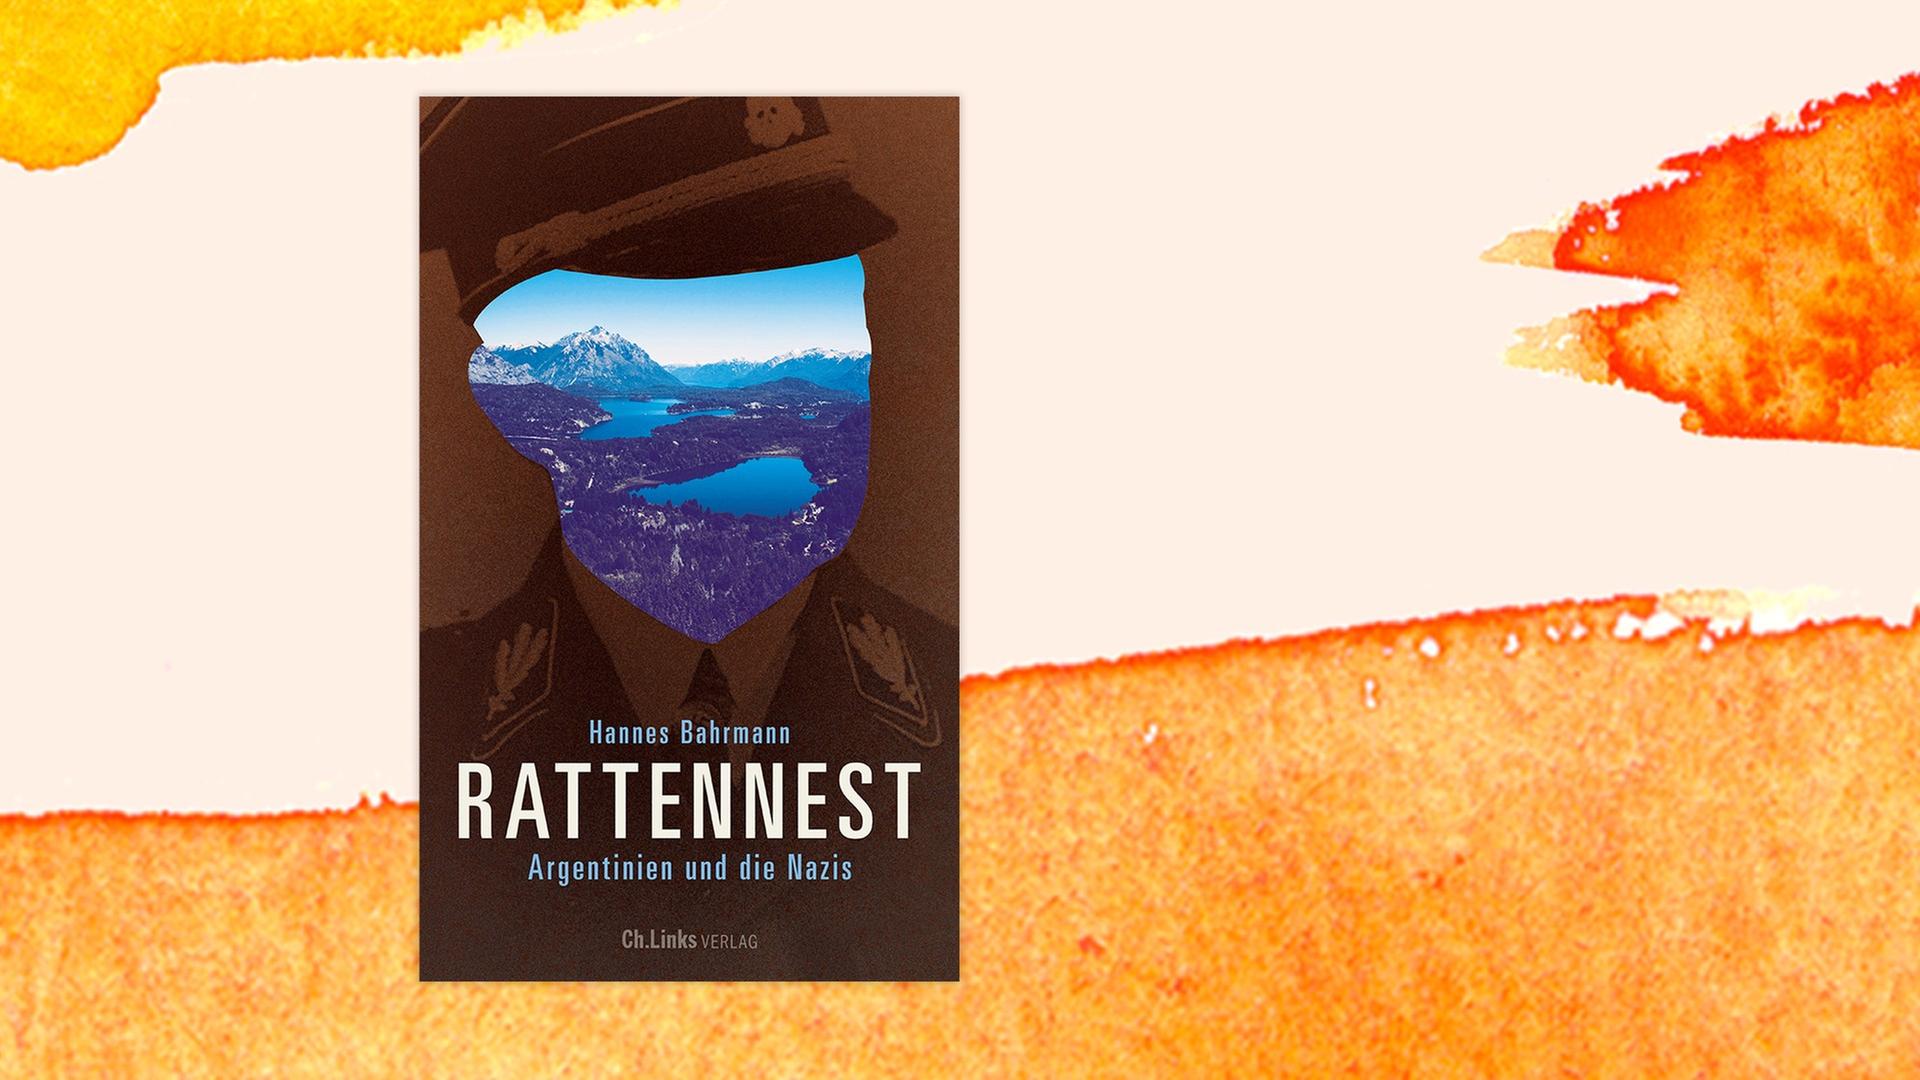 Buchcover "Rattennest. Argentinien und die Nazis" auf orangem Hintergrund